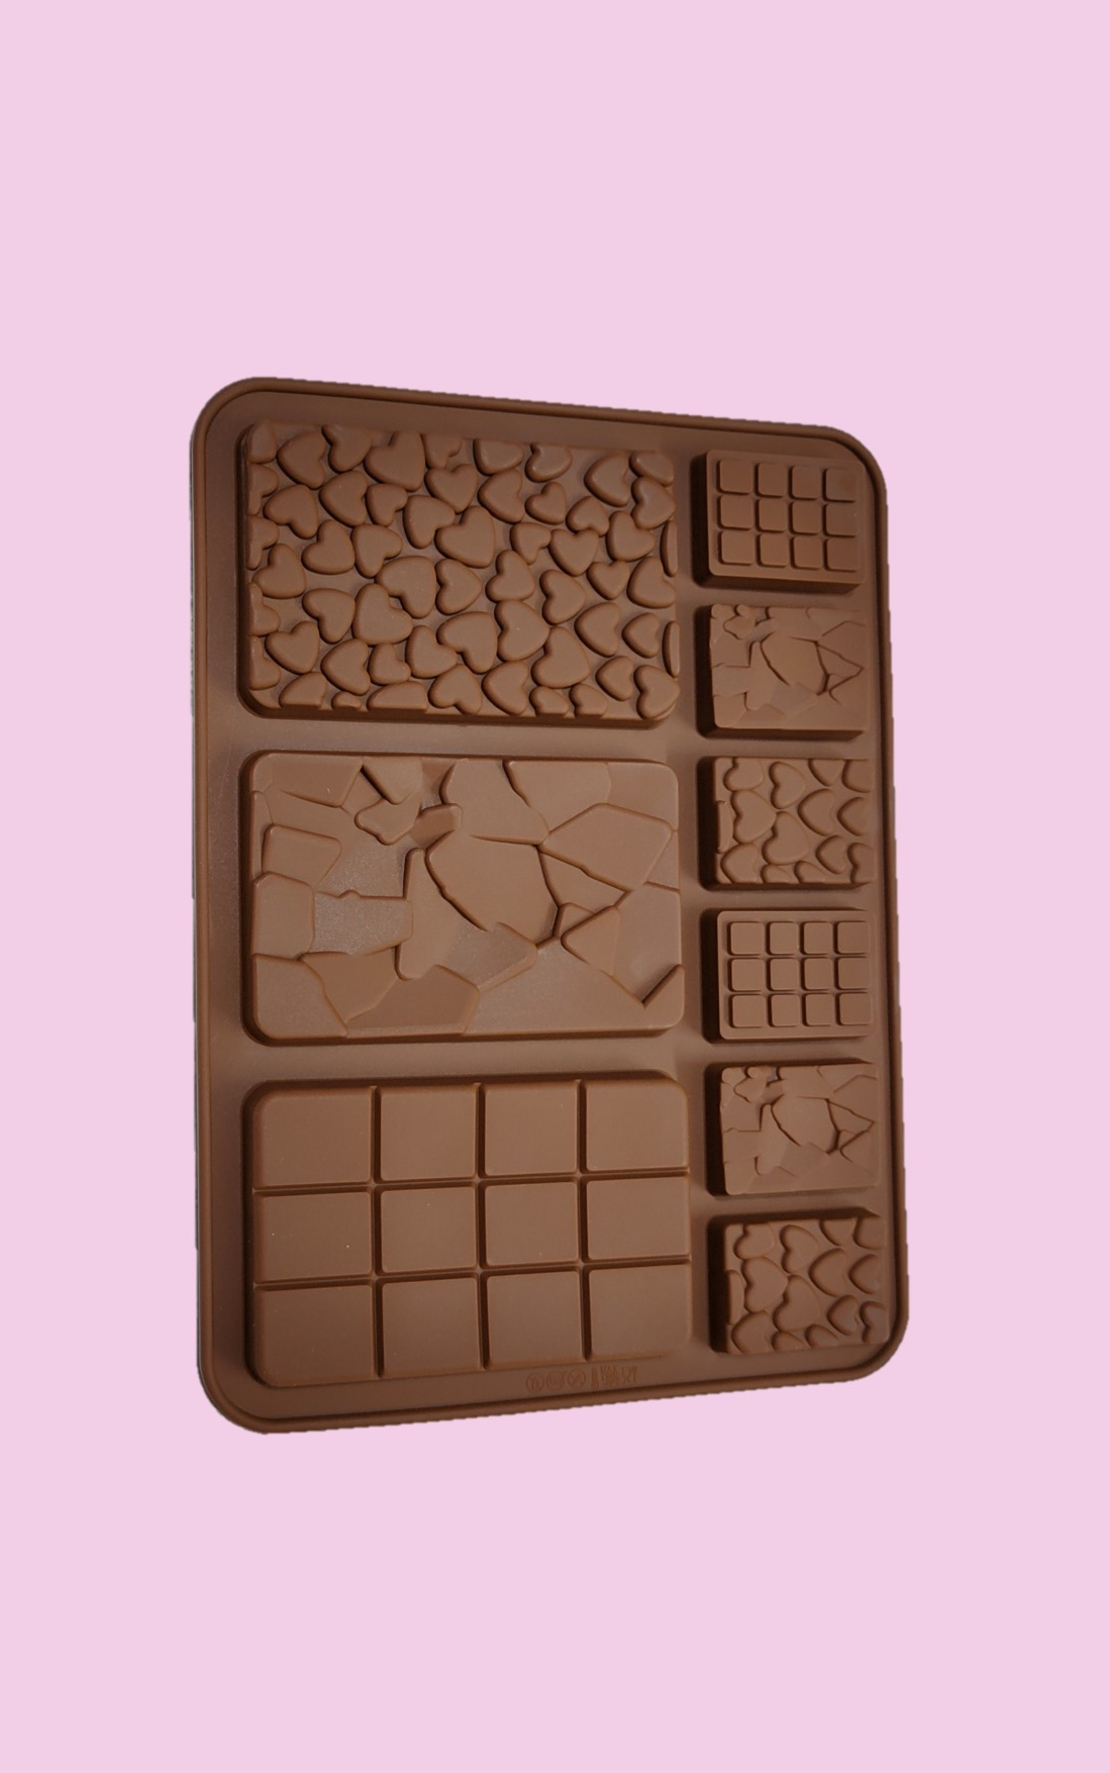 תבנית סיליקון להכנת טבלאות שוקולד עם טקסטורה + מיני טבלאות שוקולד